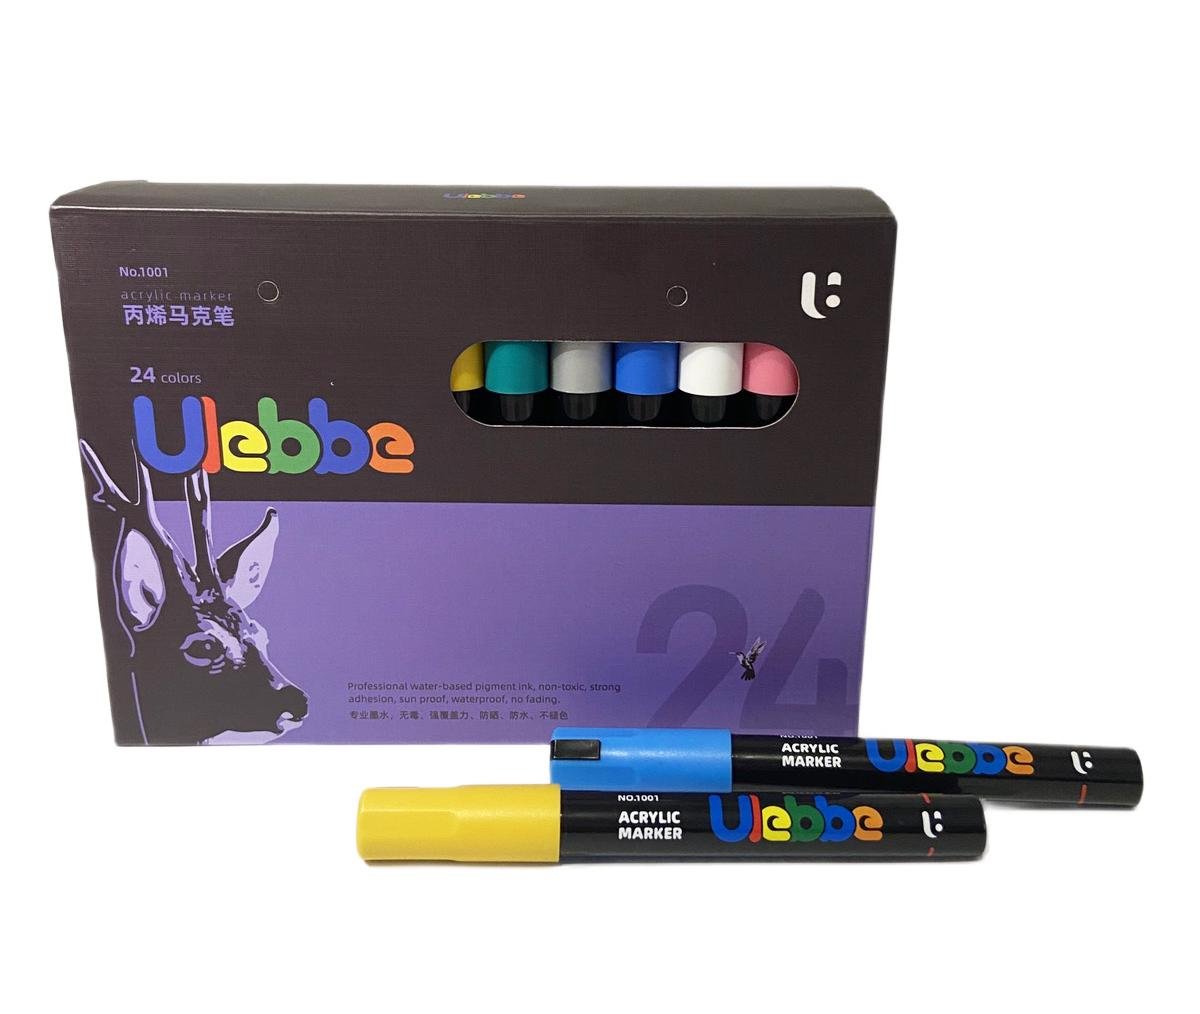 Набор акриловых маркеров Ulebbe для рисования на разных поверхностях 24 цвета (2-3 мм) - фото 5